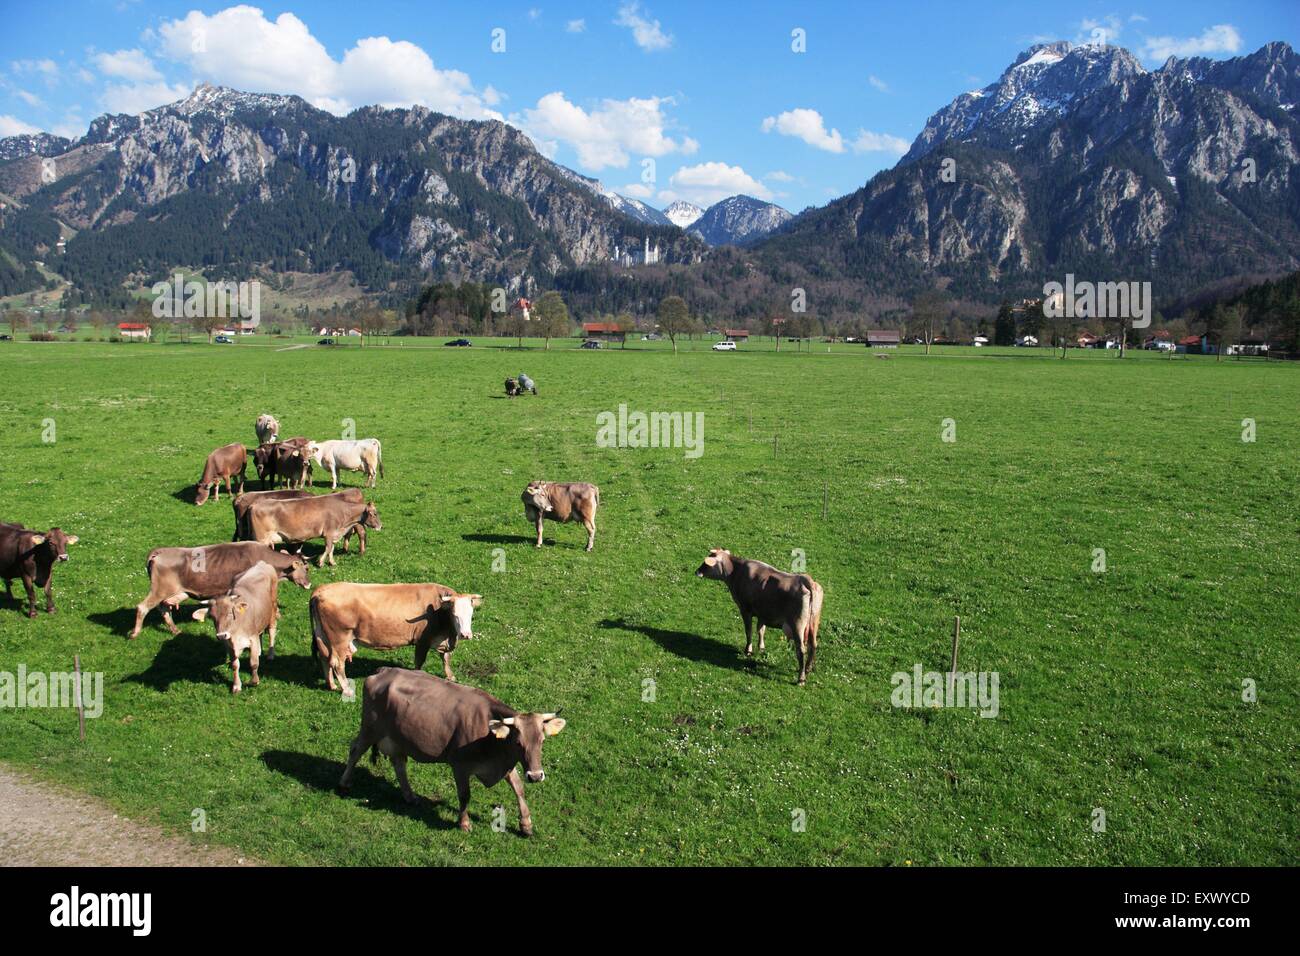 Château de Neuschwanstein, vaches sur pré, Alpes, Bavaria, Germany, Europe Banque D'Images